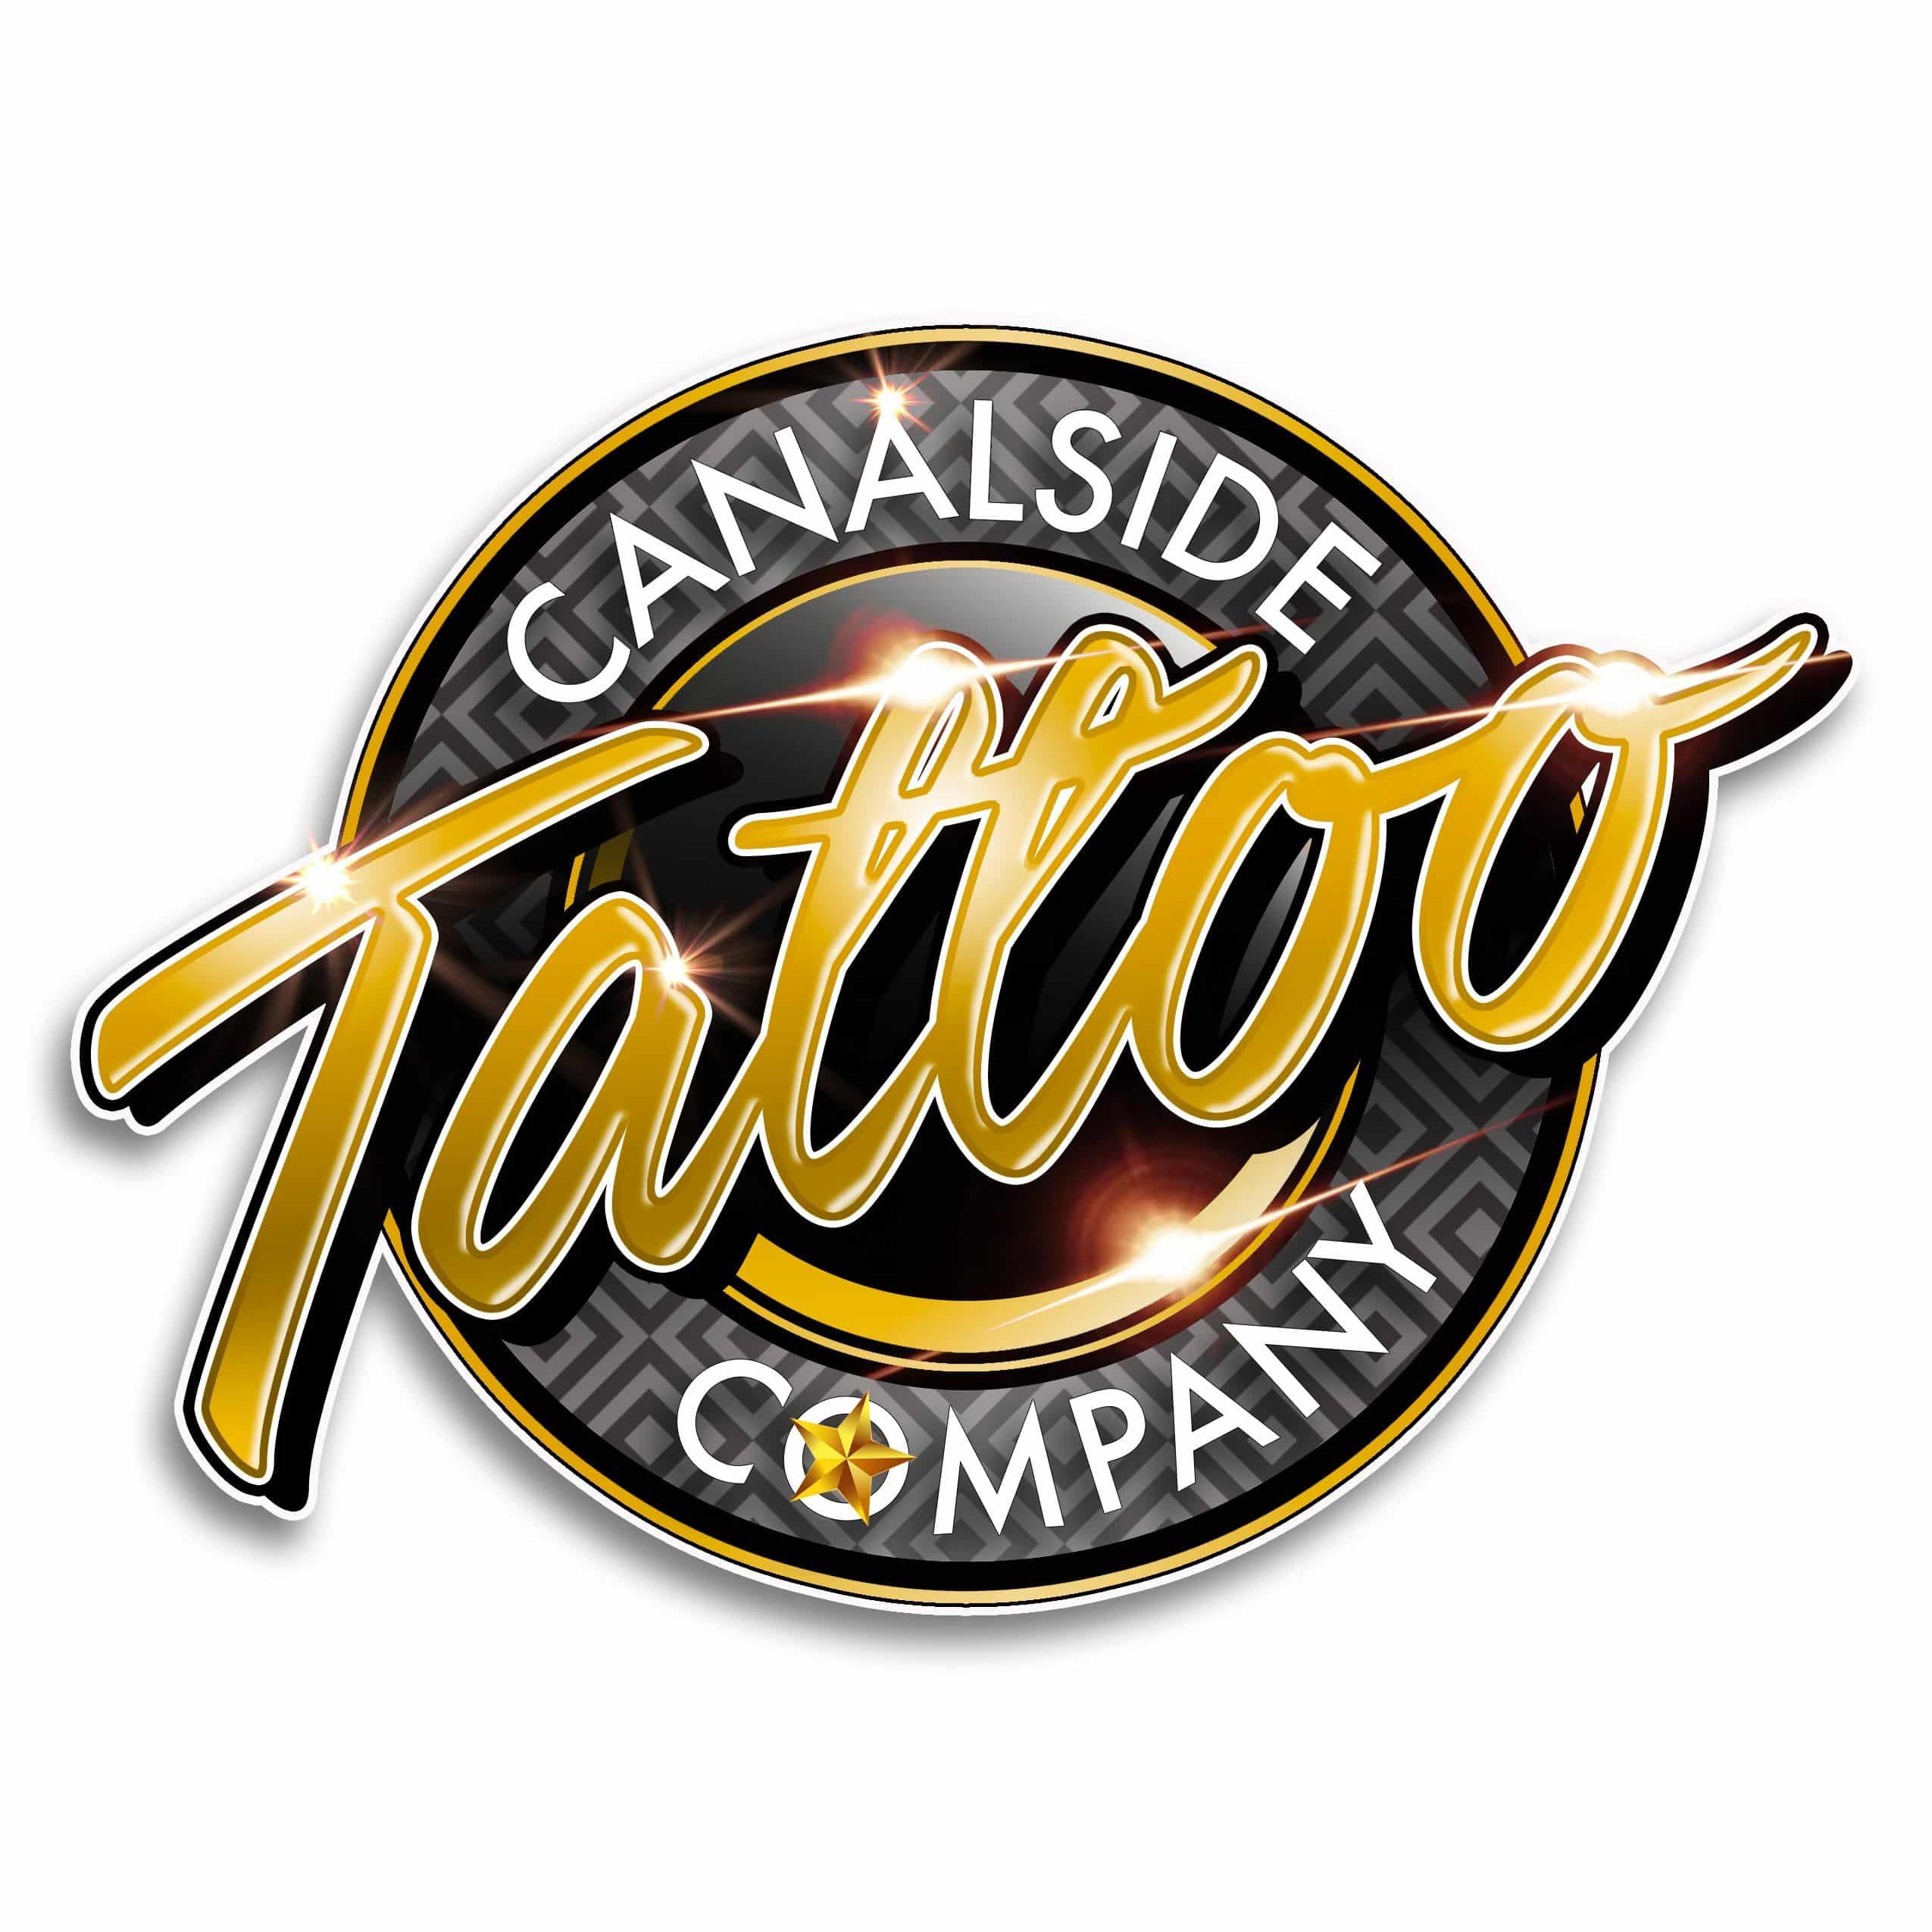 Canalside Tattoo Company